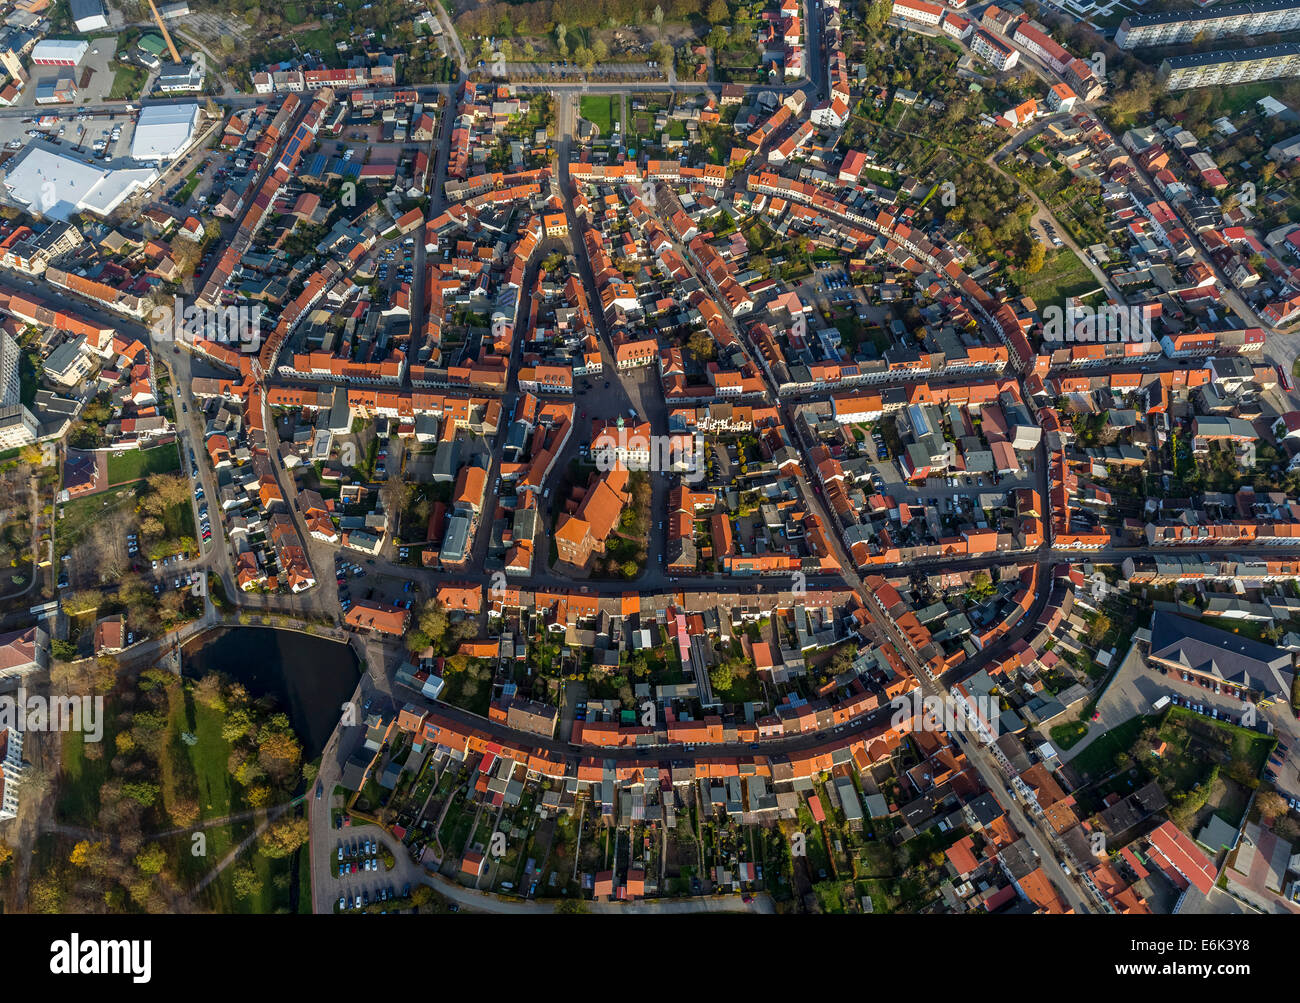 Vista aérea de la ciudad, con un diseño circular, Teterow, Mecklemburgo-Pomerania Occidental, Alemania Foto de stock